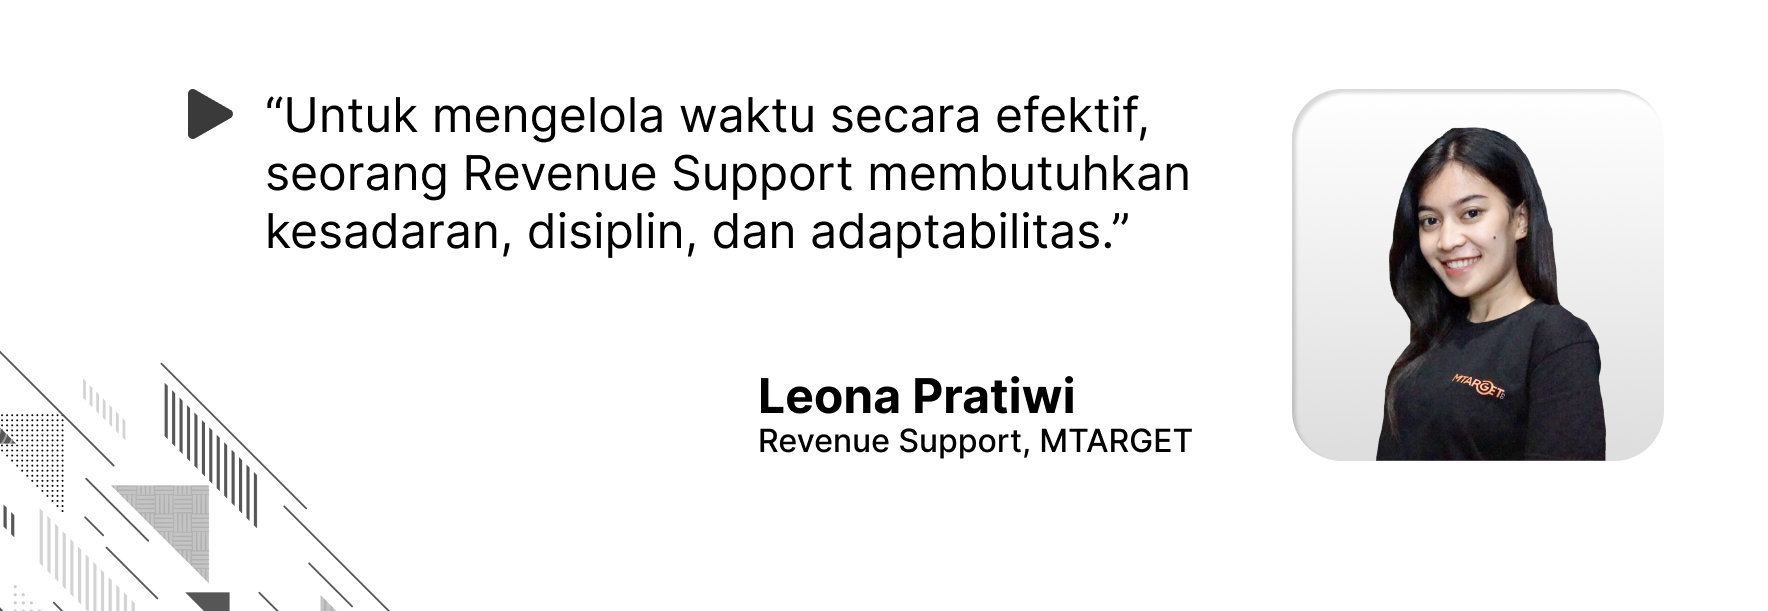 Quote oleh Leona Pratiwi mengenai pengelolaan waktu secara efektif sebagai seorang Revenue Support